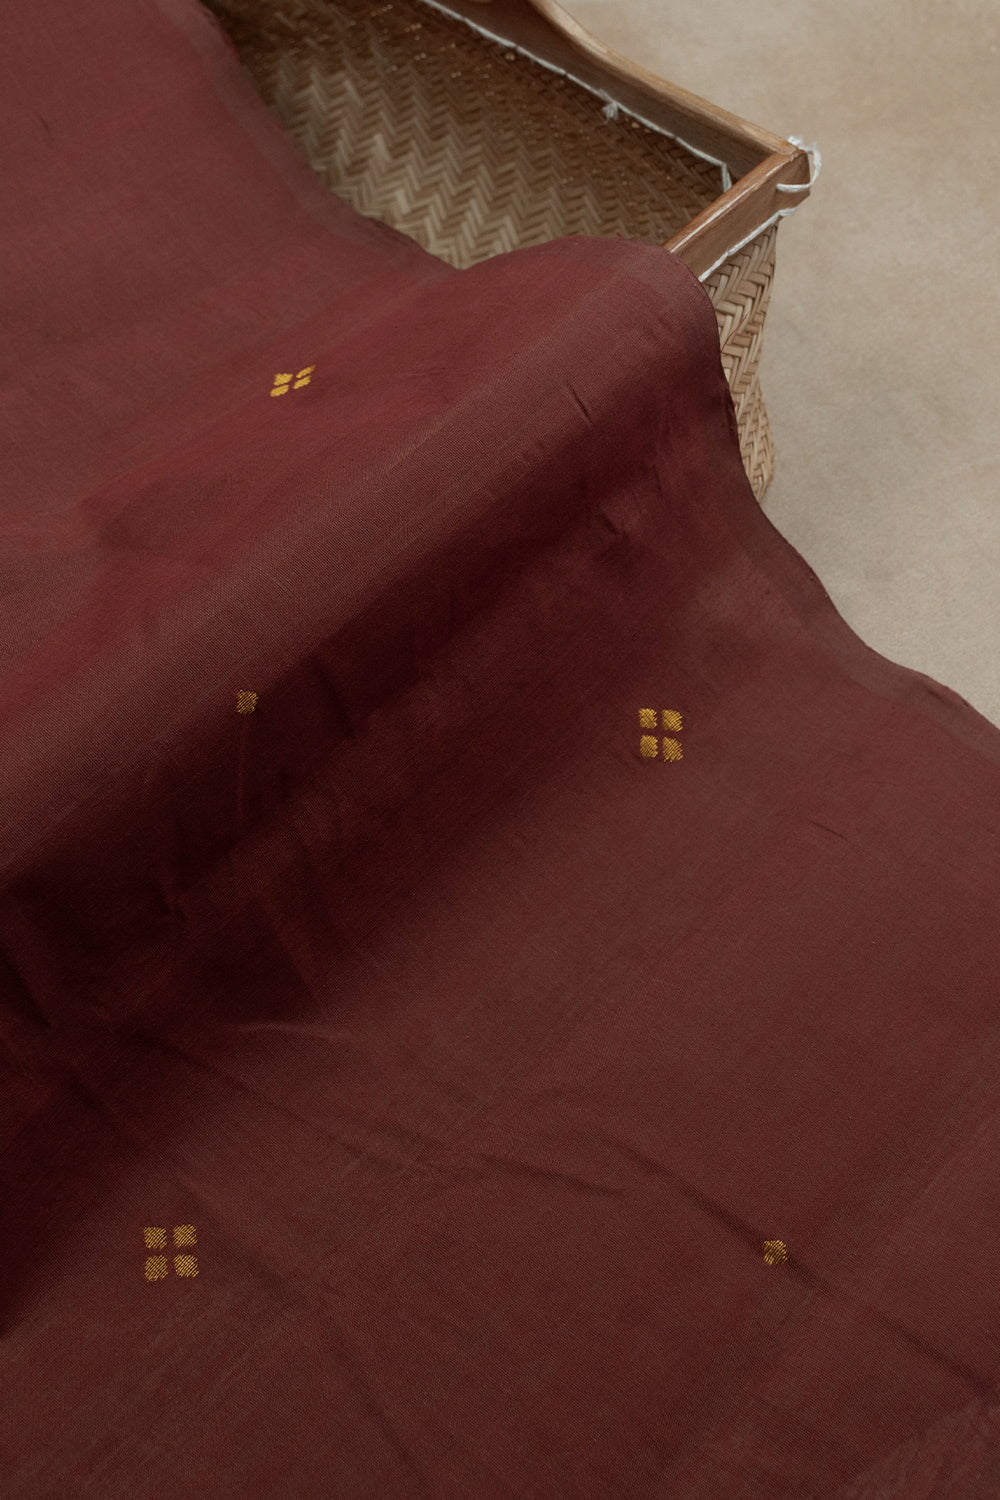 Golden Butta on Maroon Handwoven Cotton Fabric